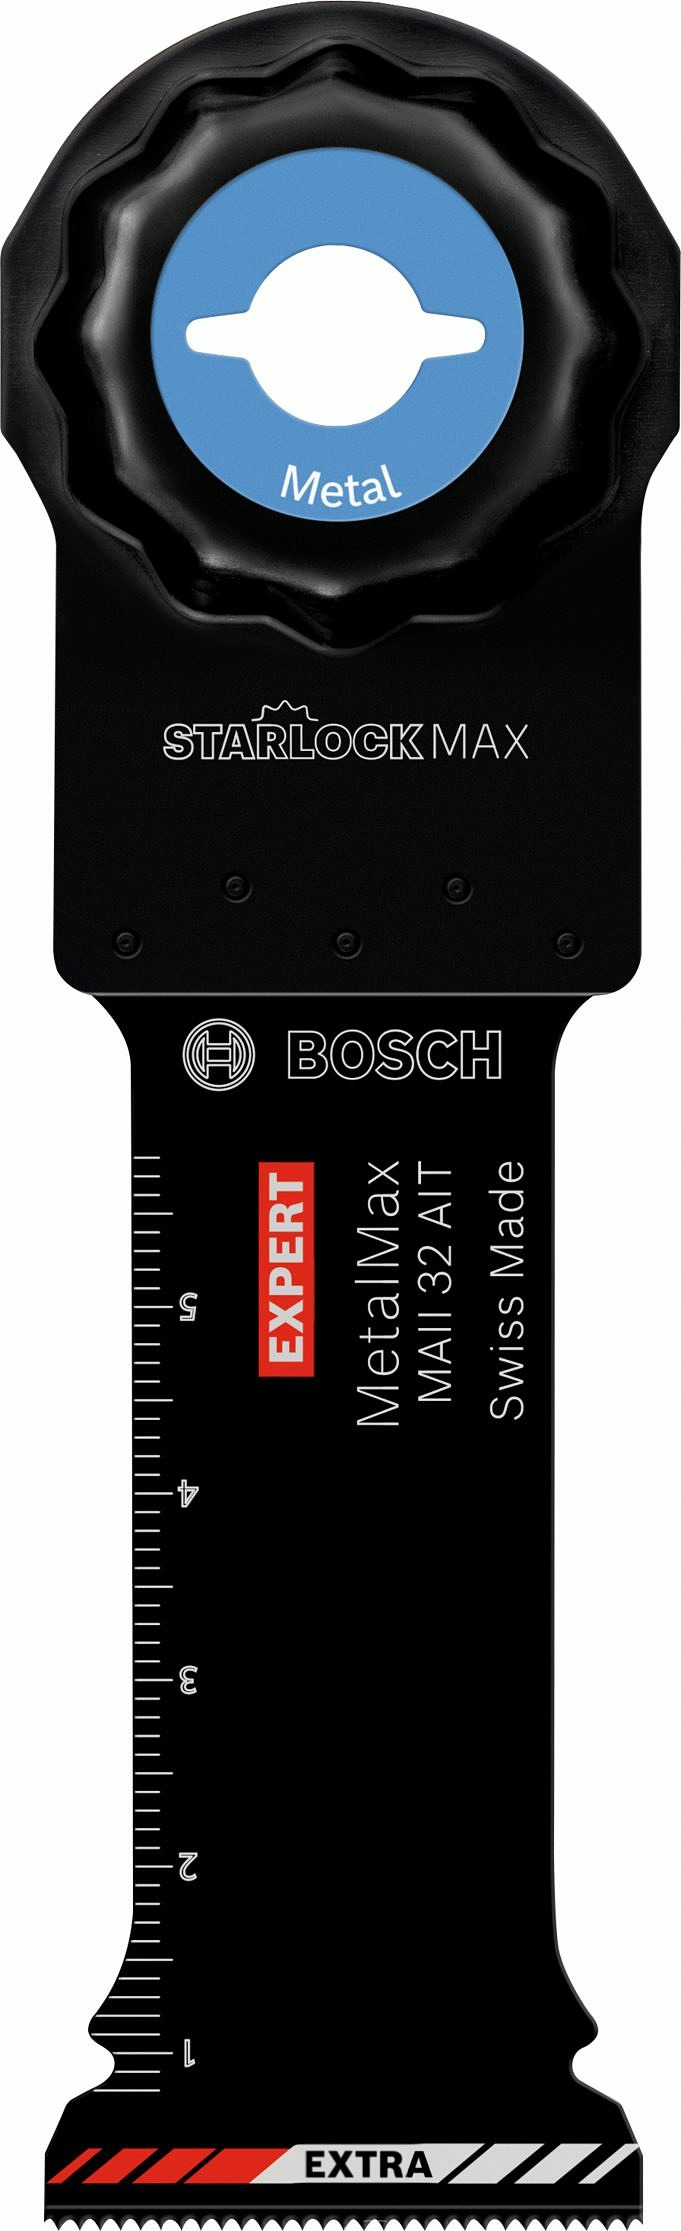 Bosch StarlockMAX Oszillierendes Multifunktionswerkzeug GOP40-30 Testbericht